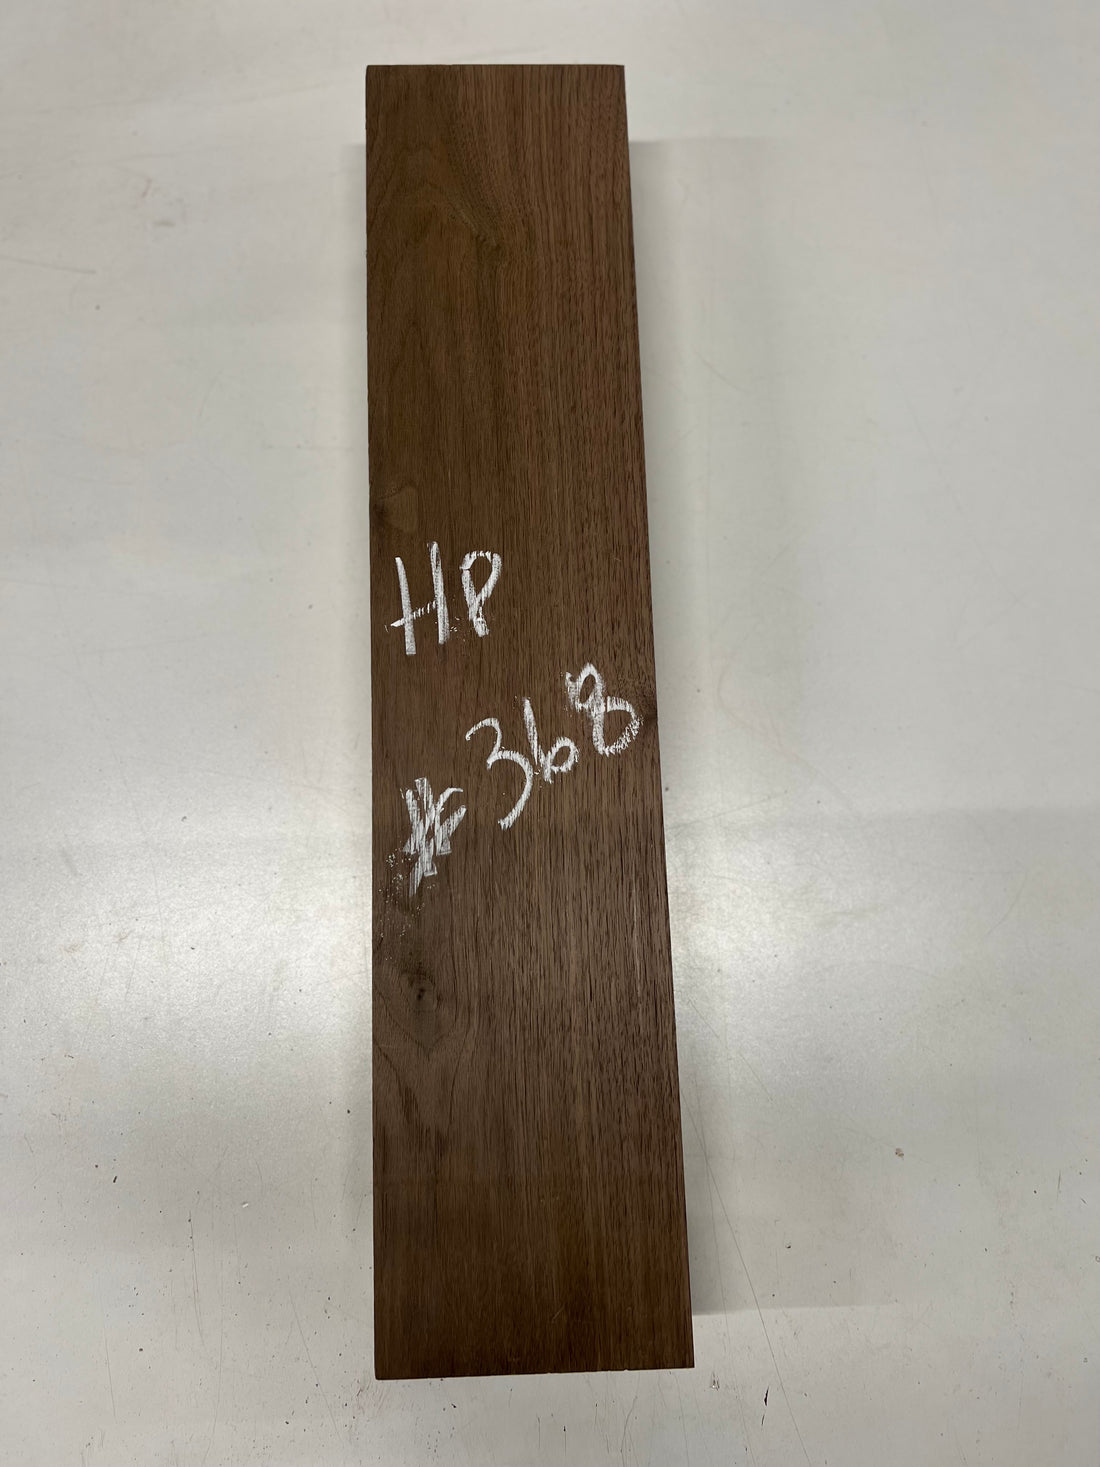 Black Walnut Lumber Board Wood blank 25&quot;x 5-1/2&quot;x 3&quot; 